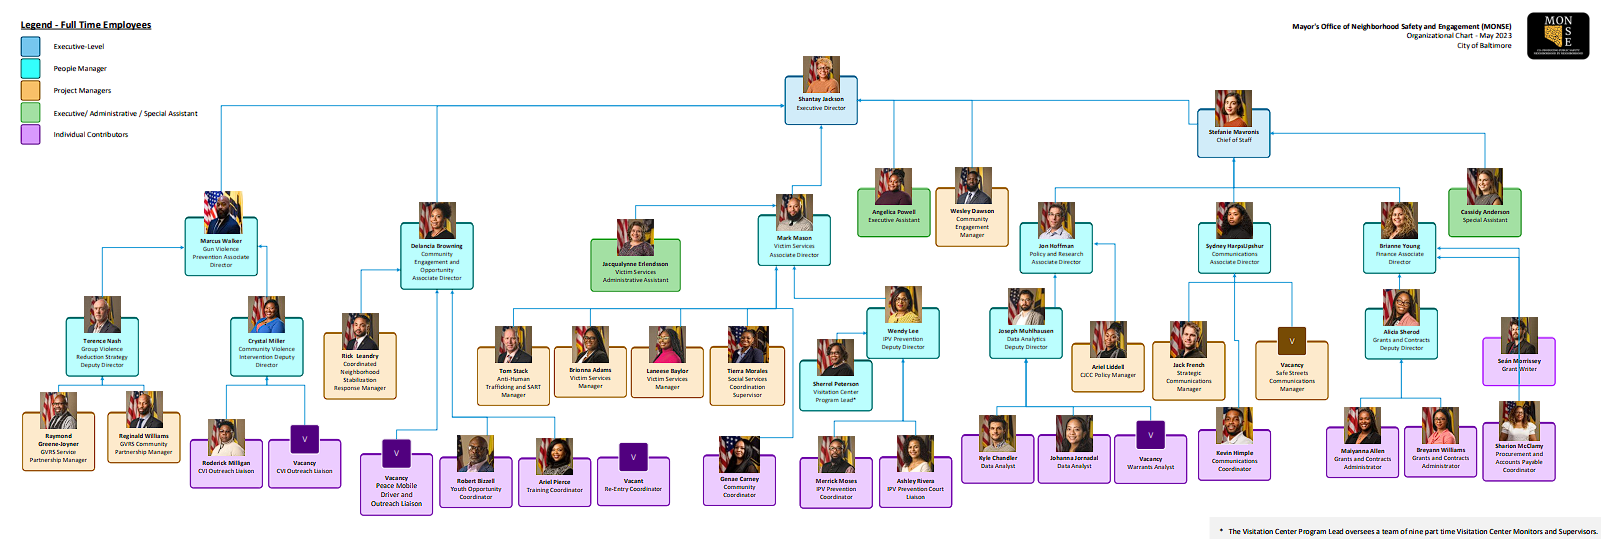 MONSE Staff Organizational Chart with Photos 